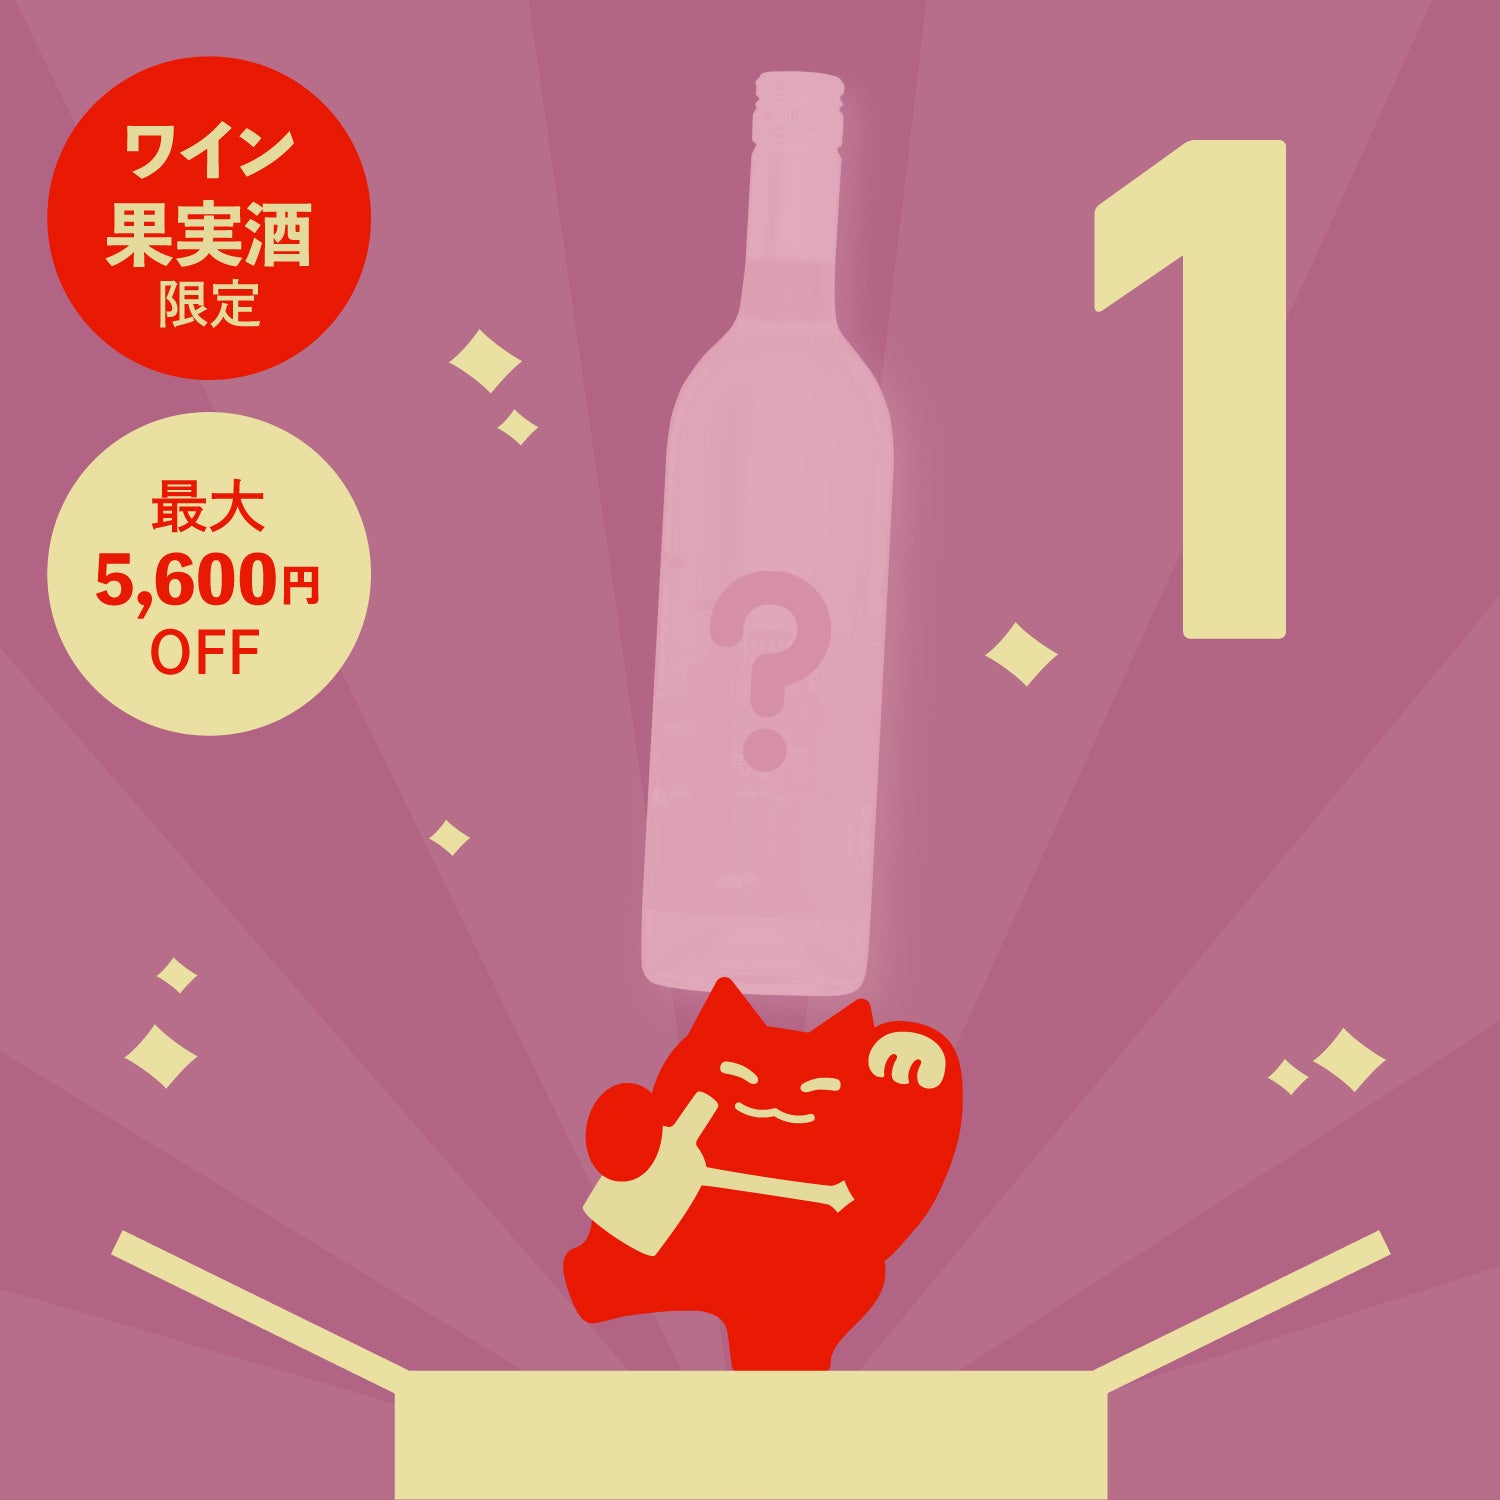 【100本限定】メルマガ限定1本酒ガチャ-果実酒・ワイン-